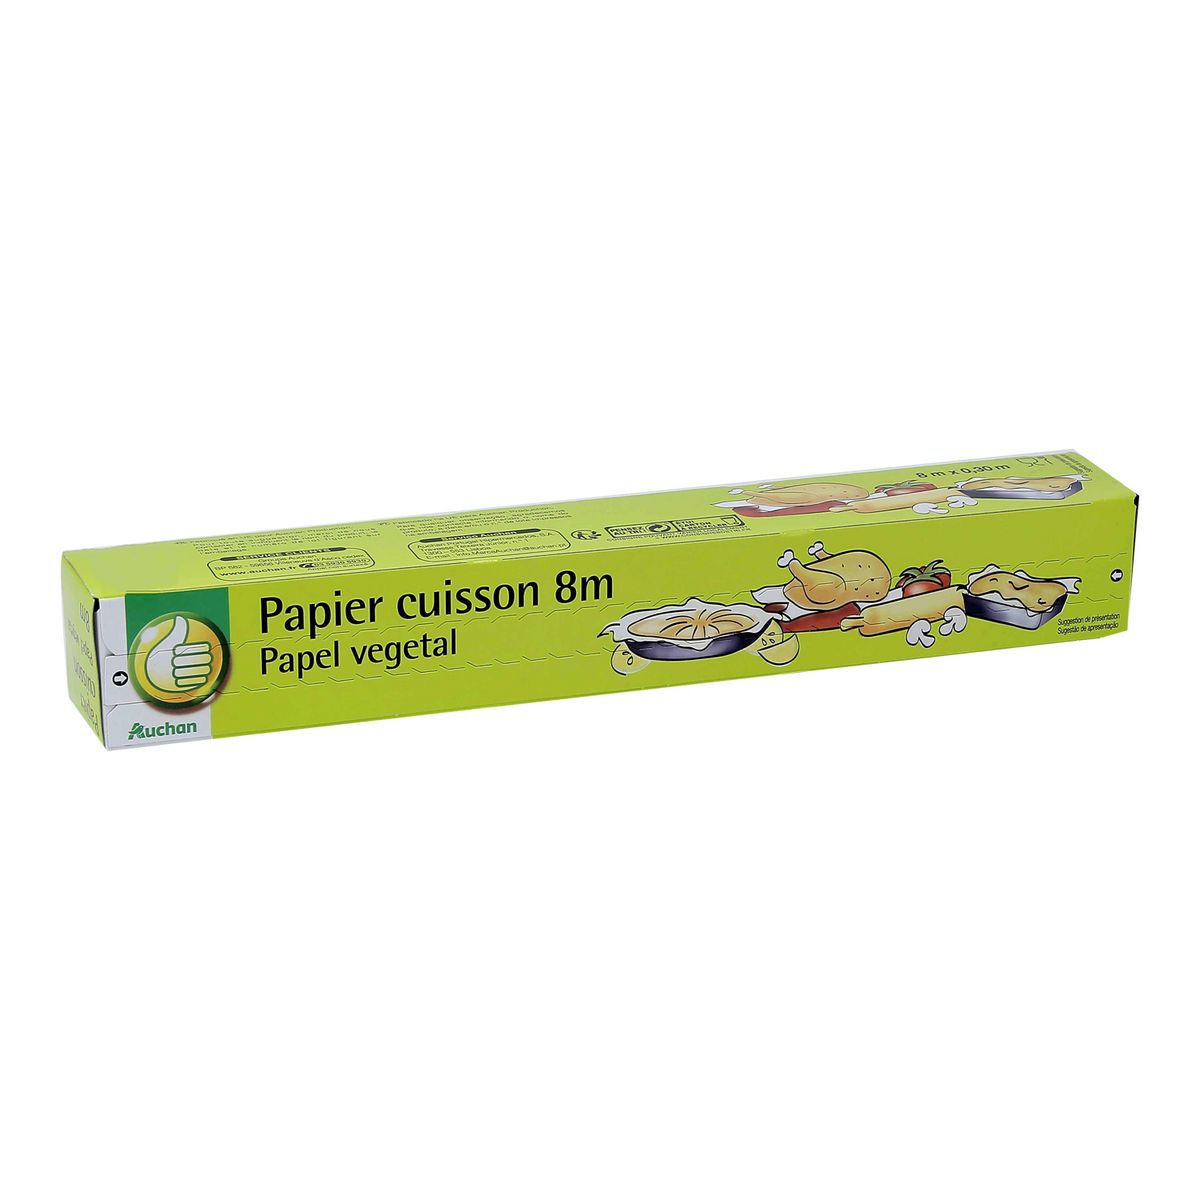 POUCE Papier cuisson en papier végétal 8m 1 rouleau pas cher